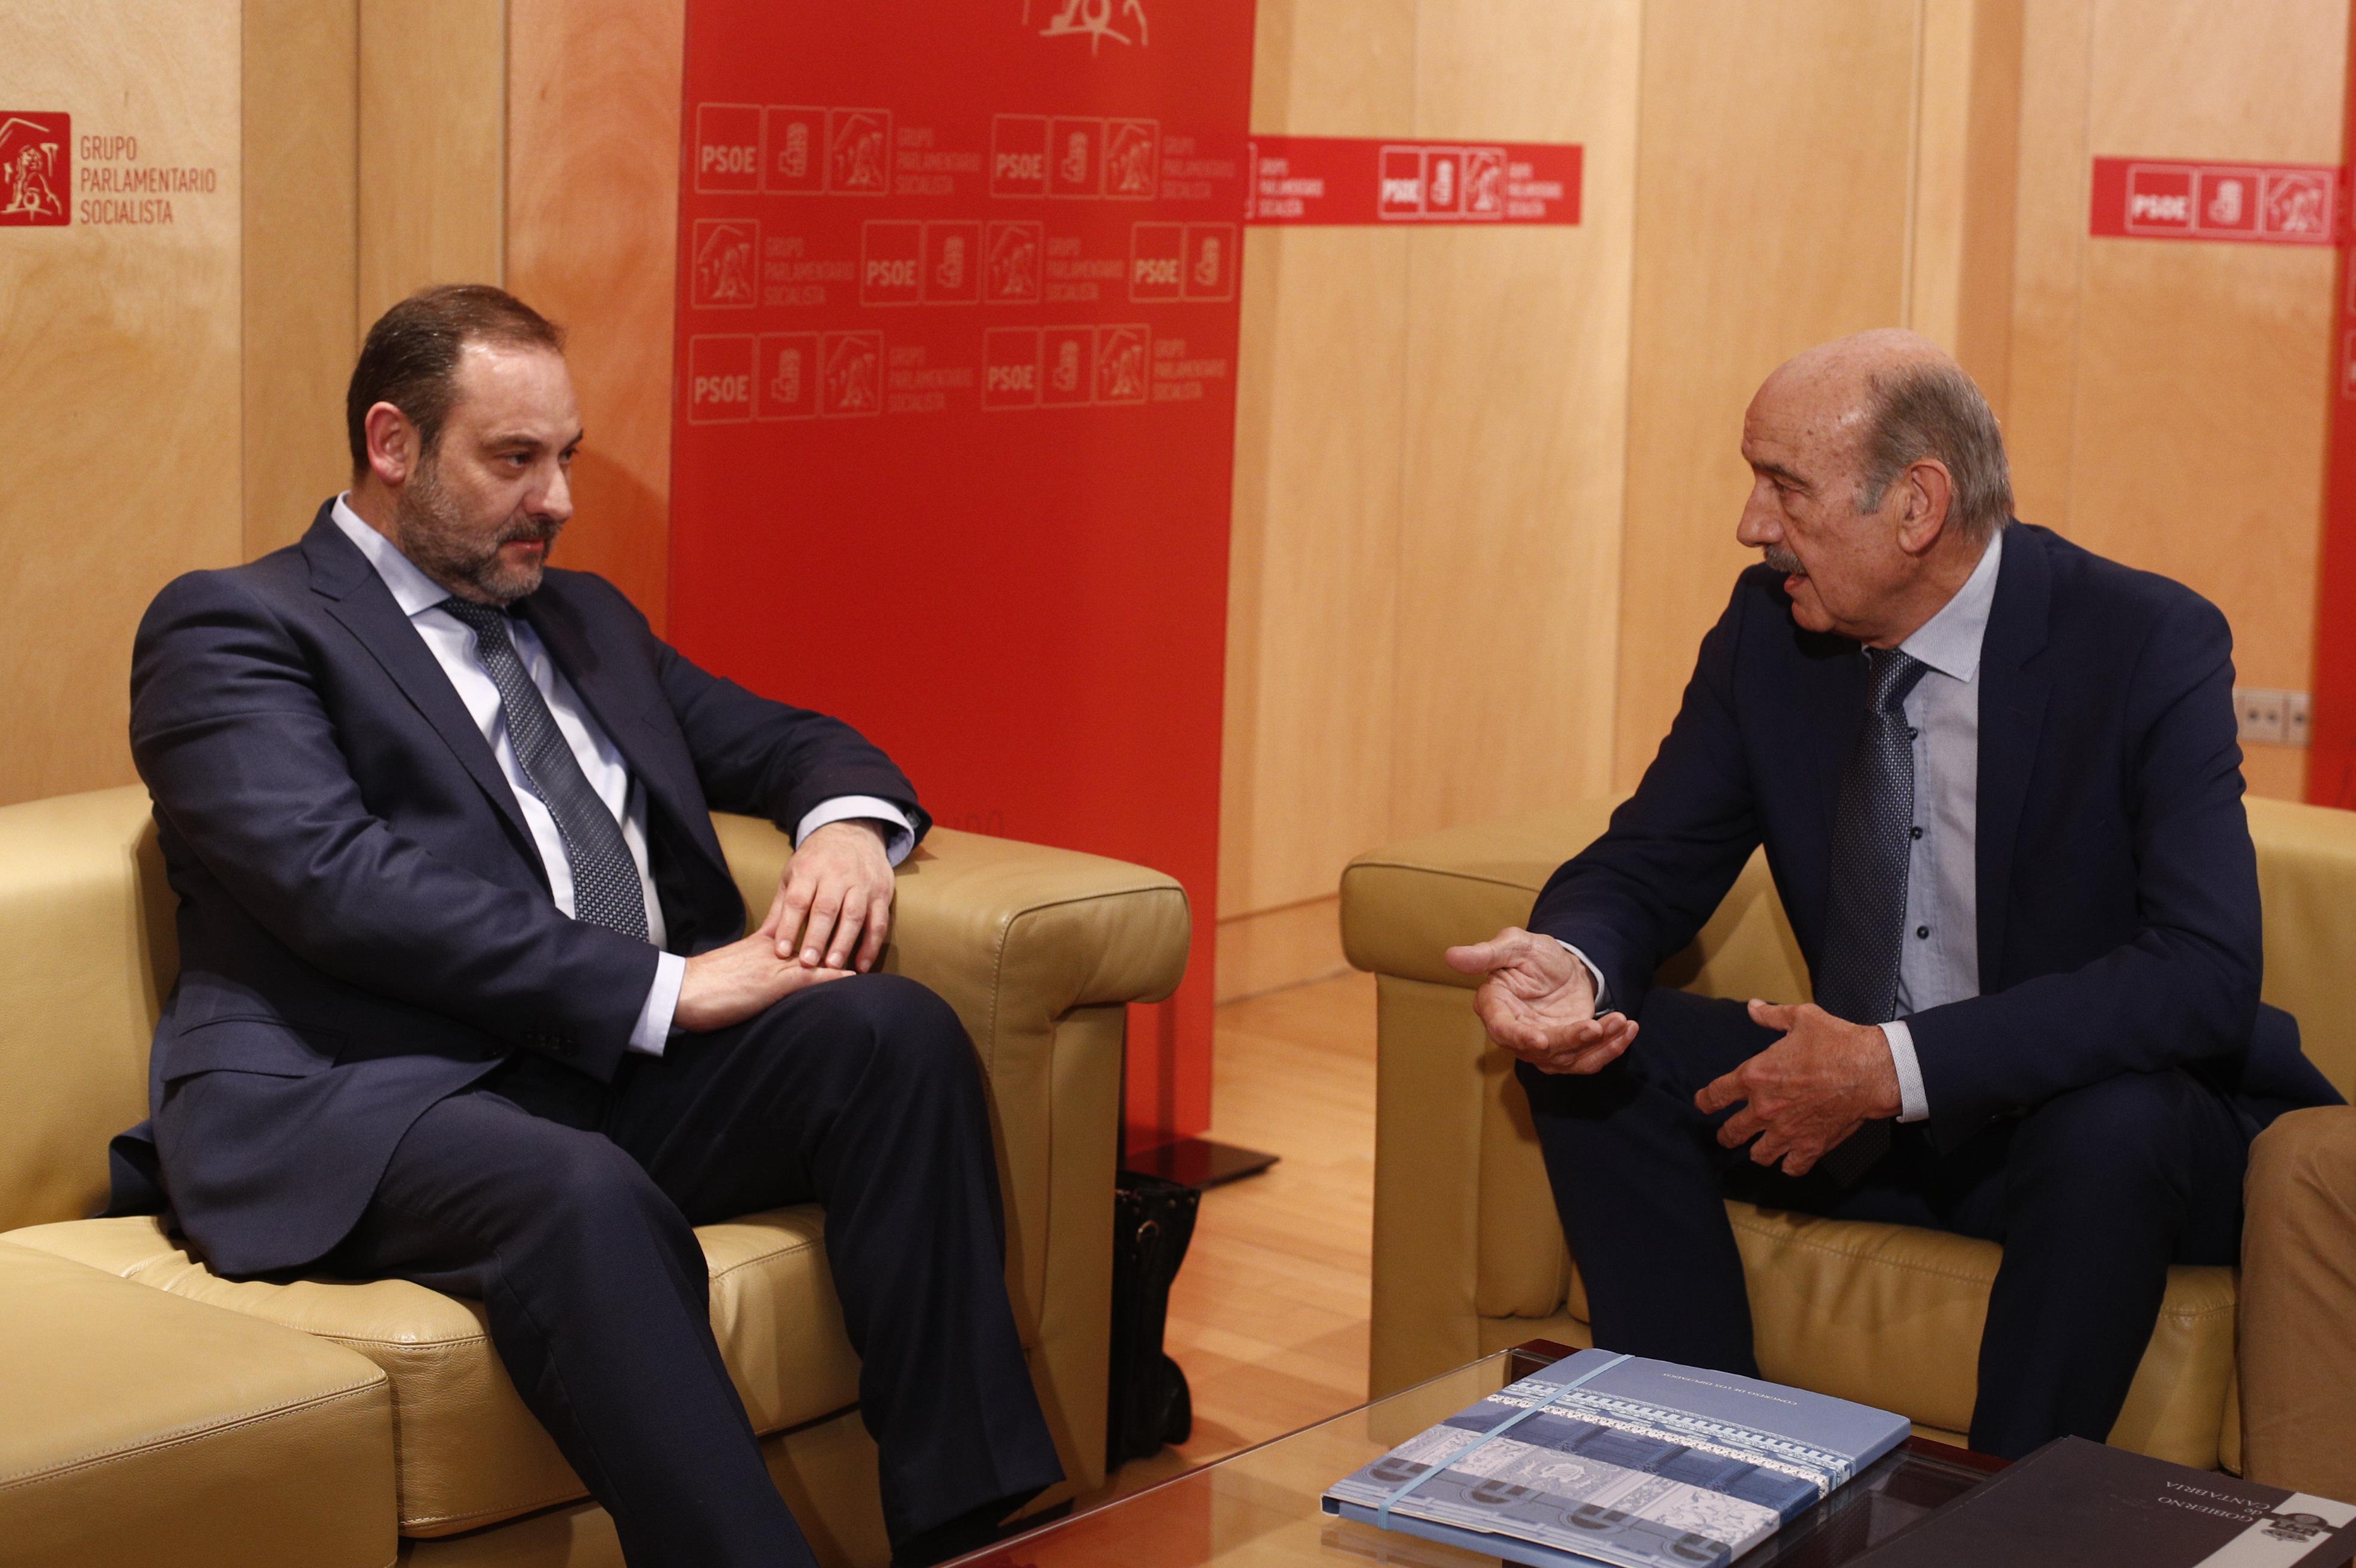  El secretario de Organización y ministro de Fomento en funciones José Luis Ábalos (i) se reúne con José María Mazón del Partido Regionalista de Cantabria (PRC) (d)